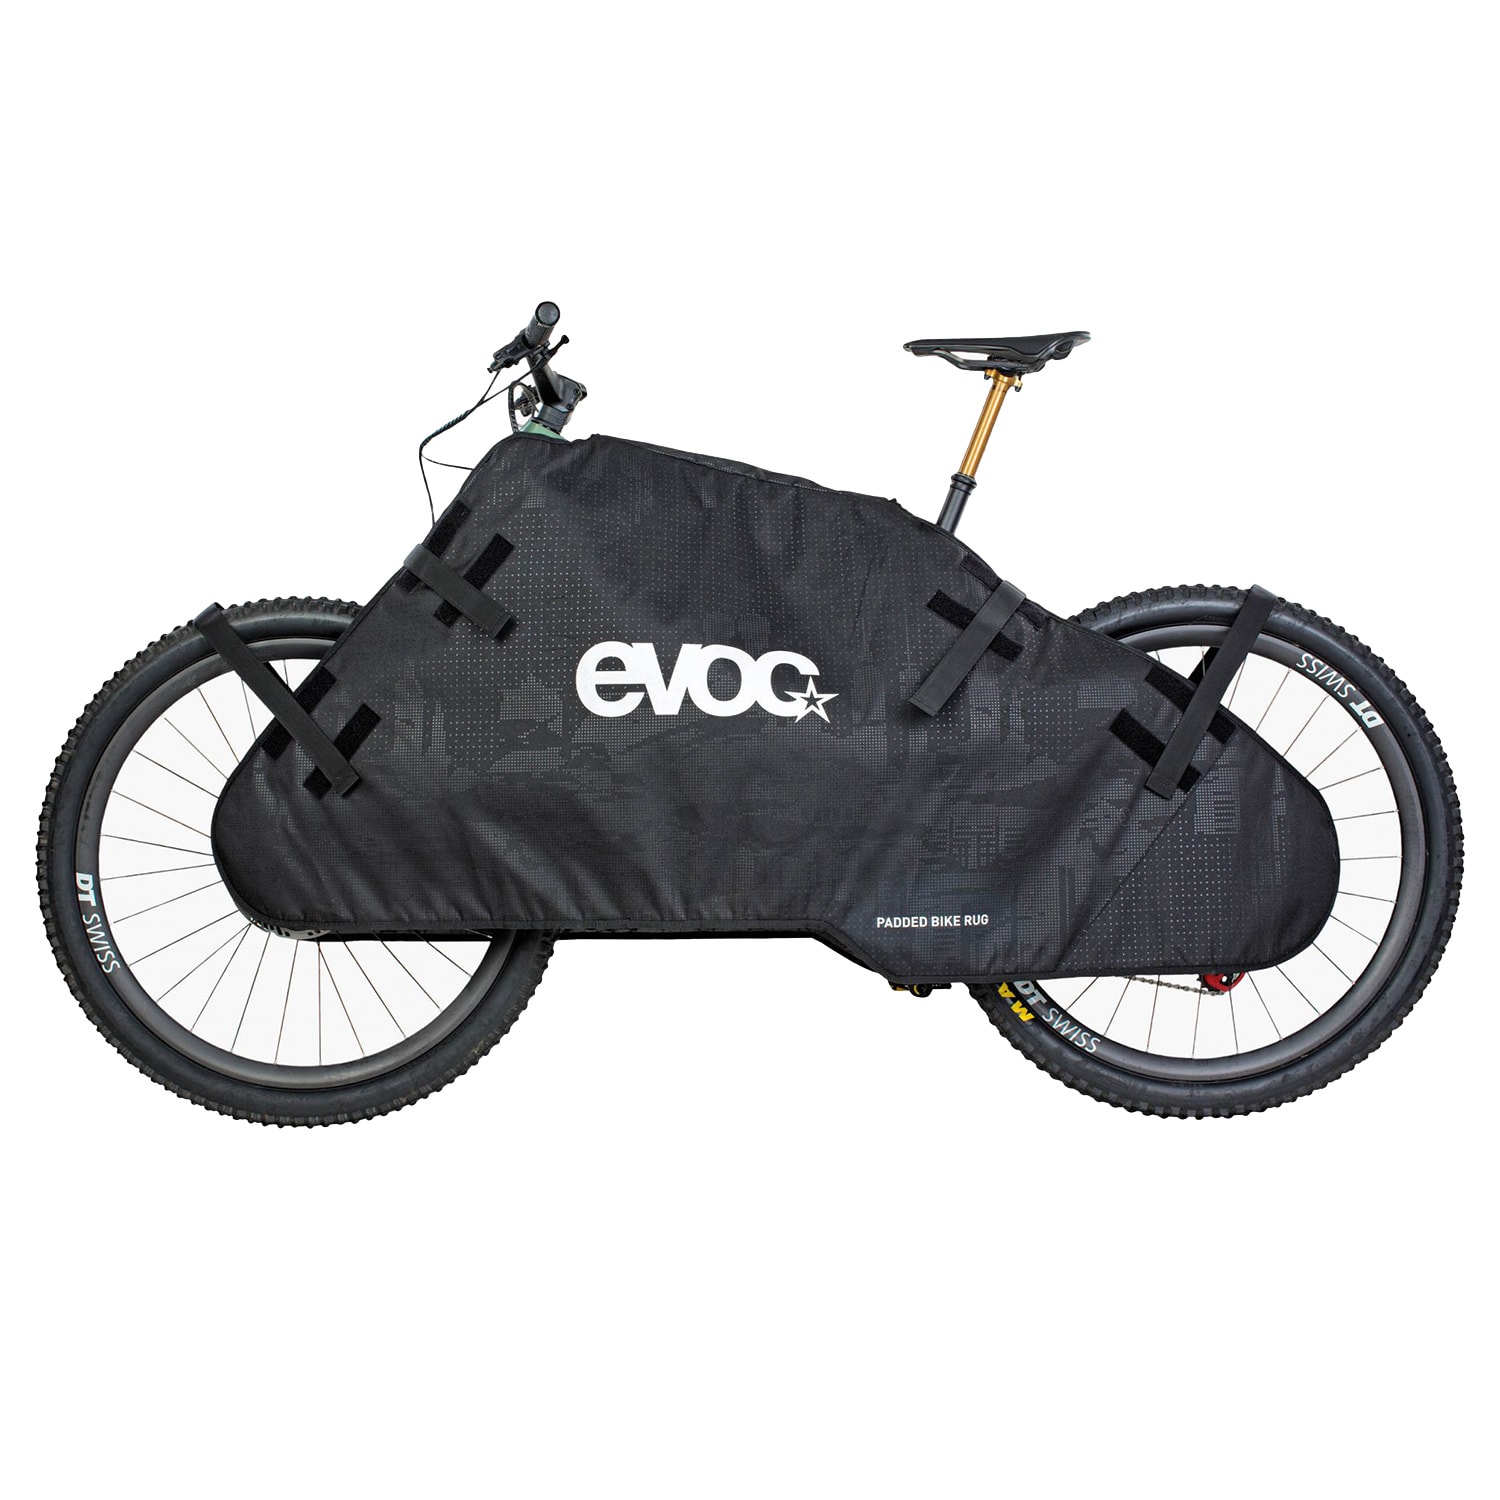 EVOC Protective Bike Rug